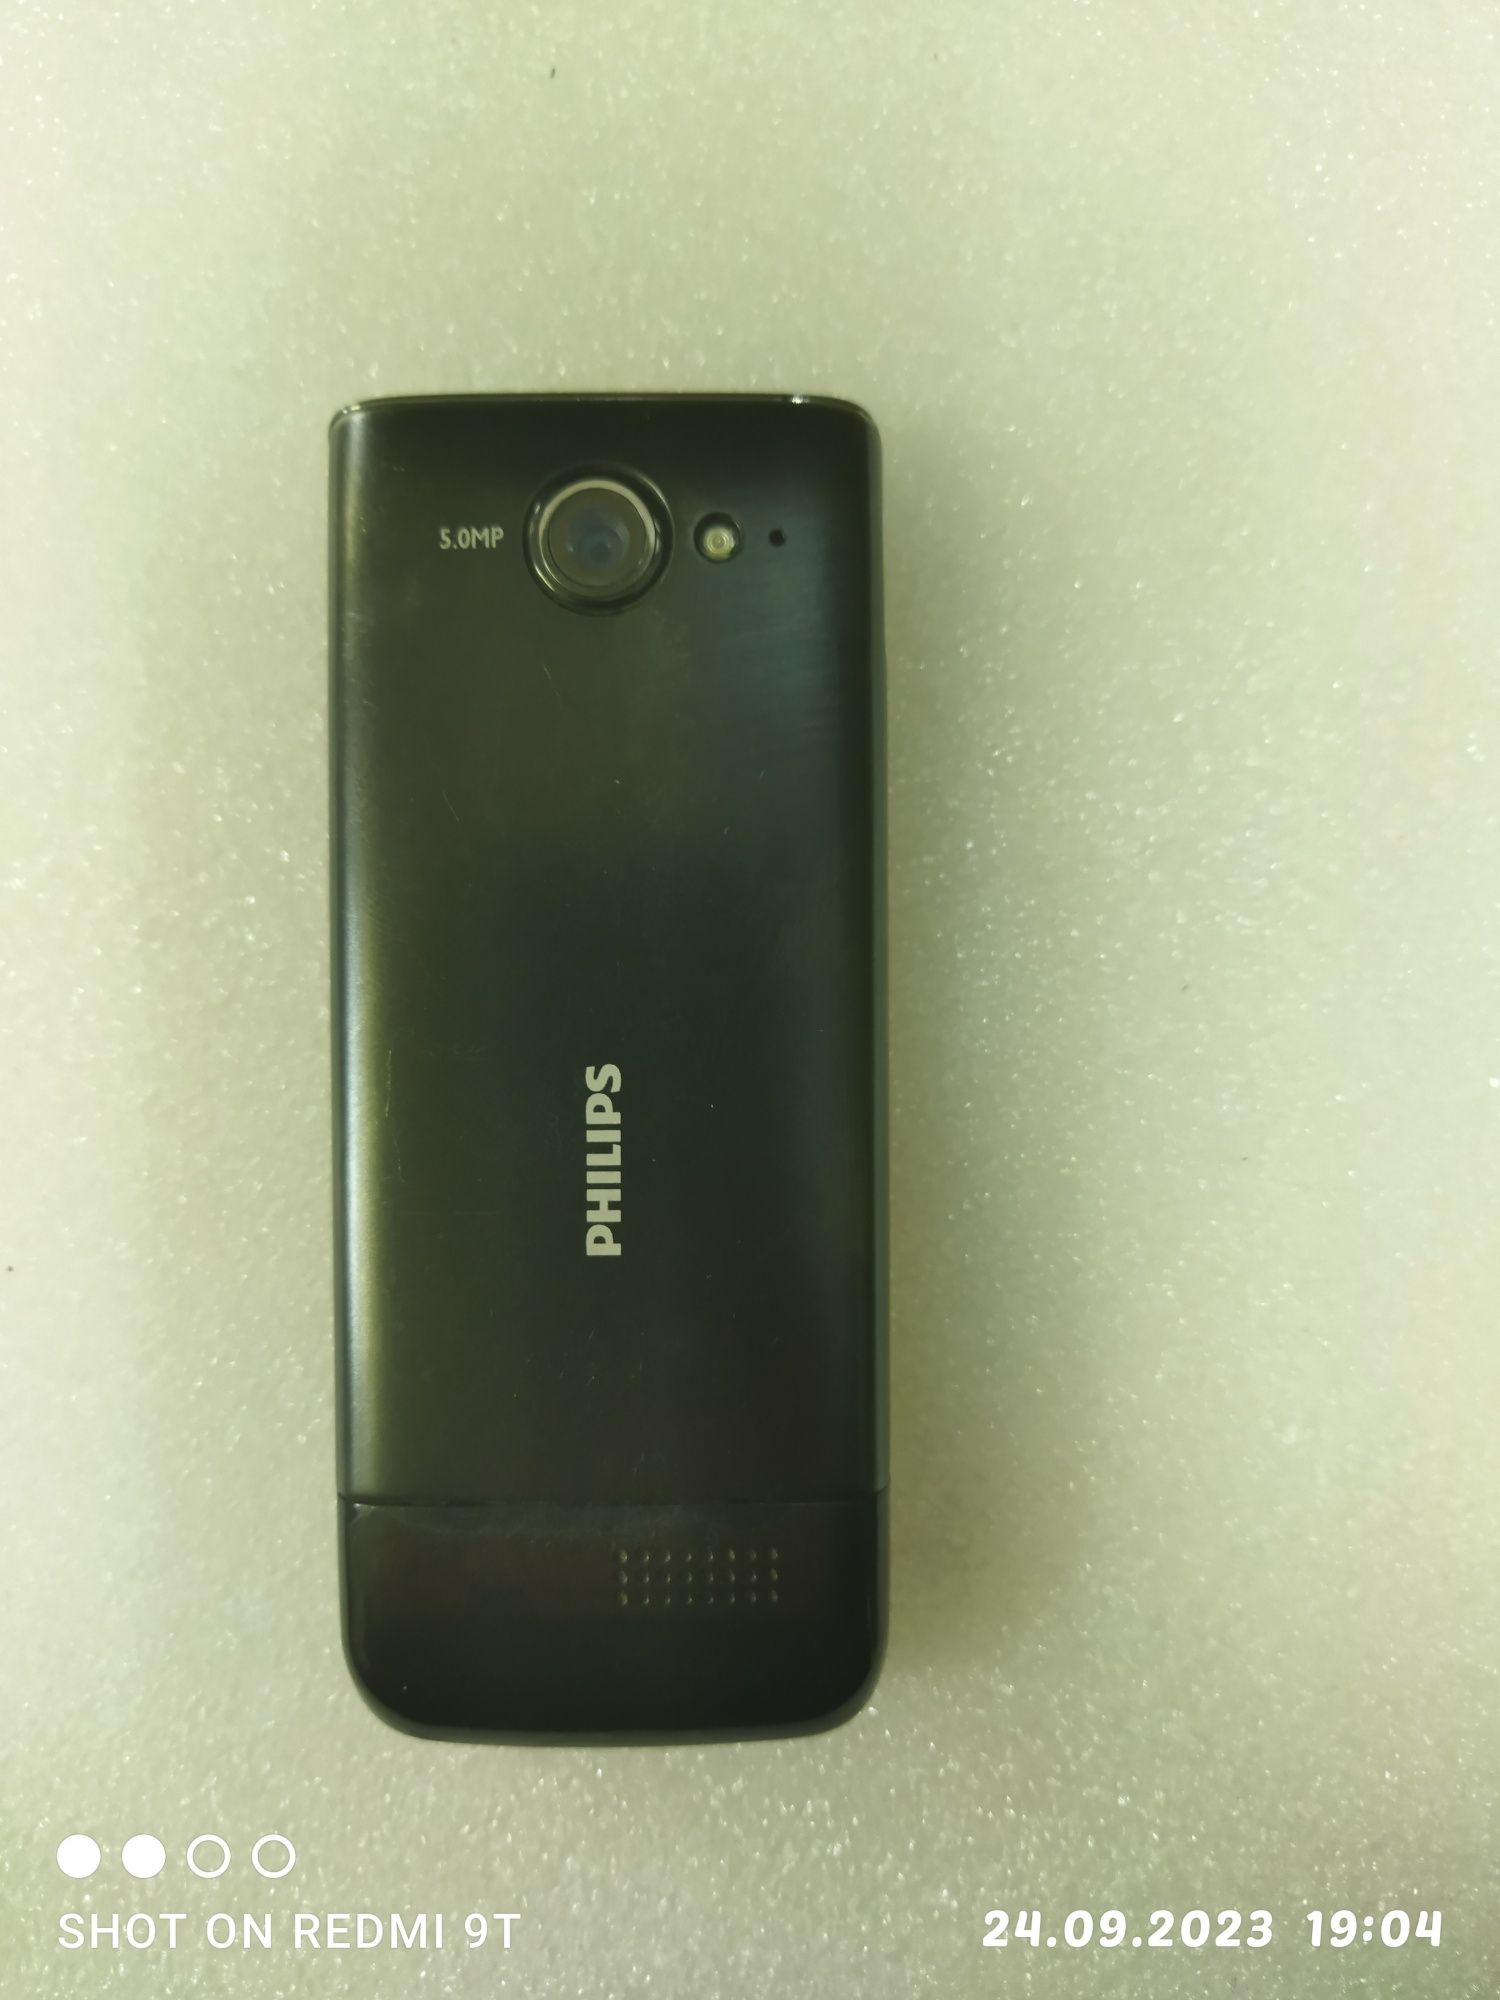 Мобильный телефон Philips Xenium X623 Black
Написать отзыв
На данный т